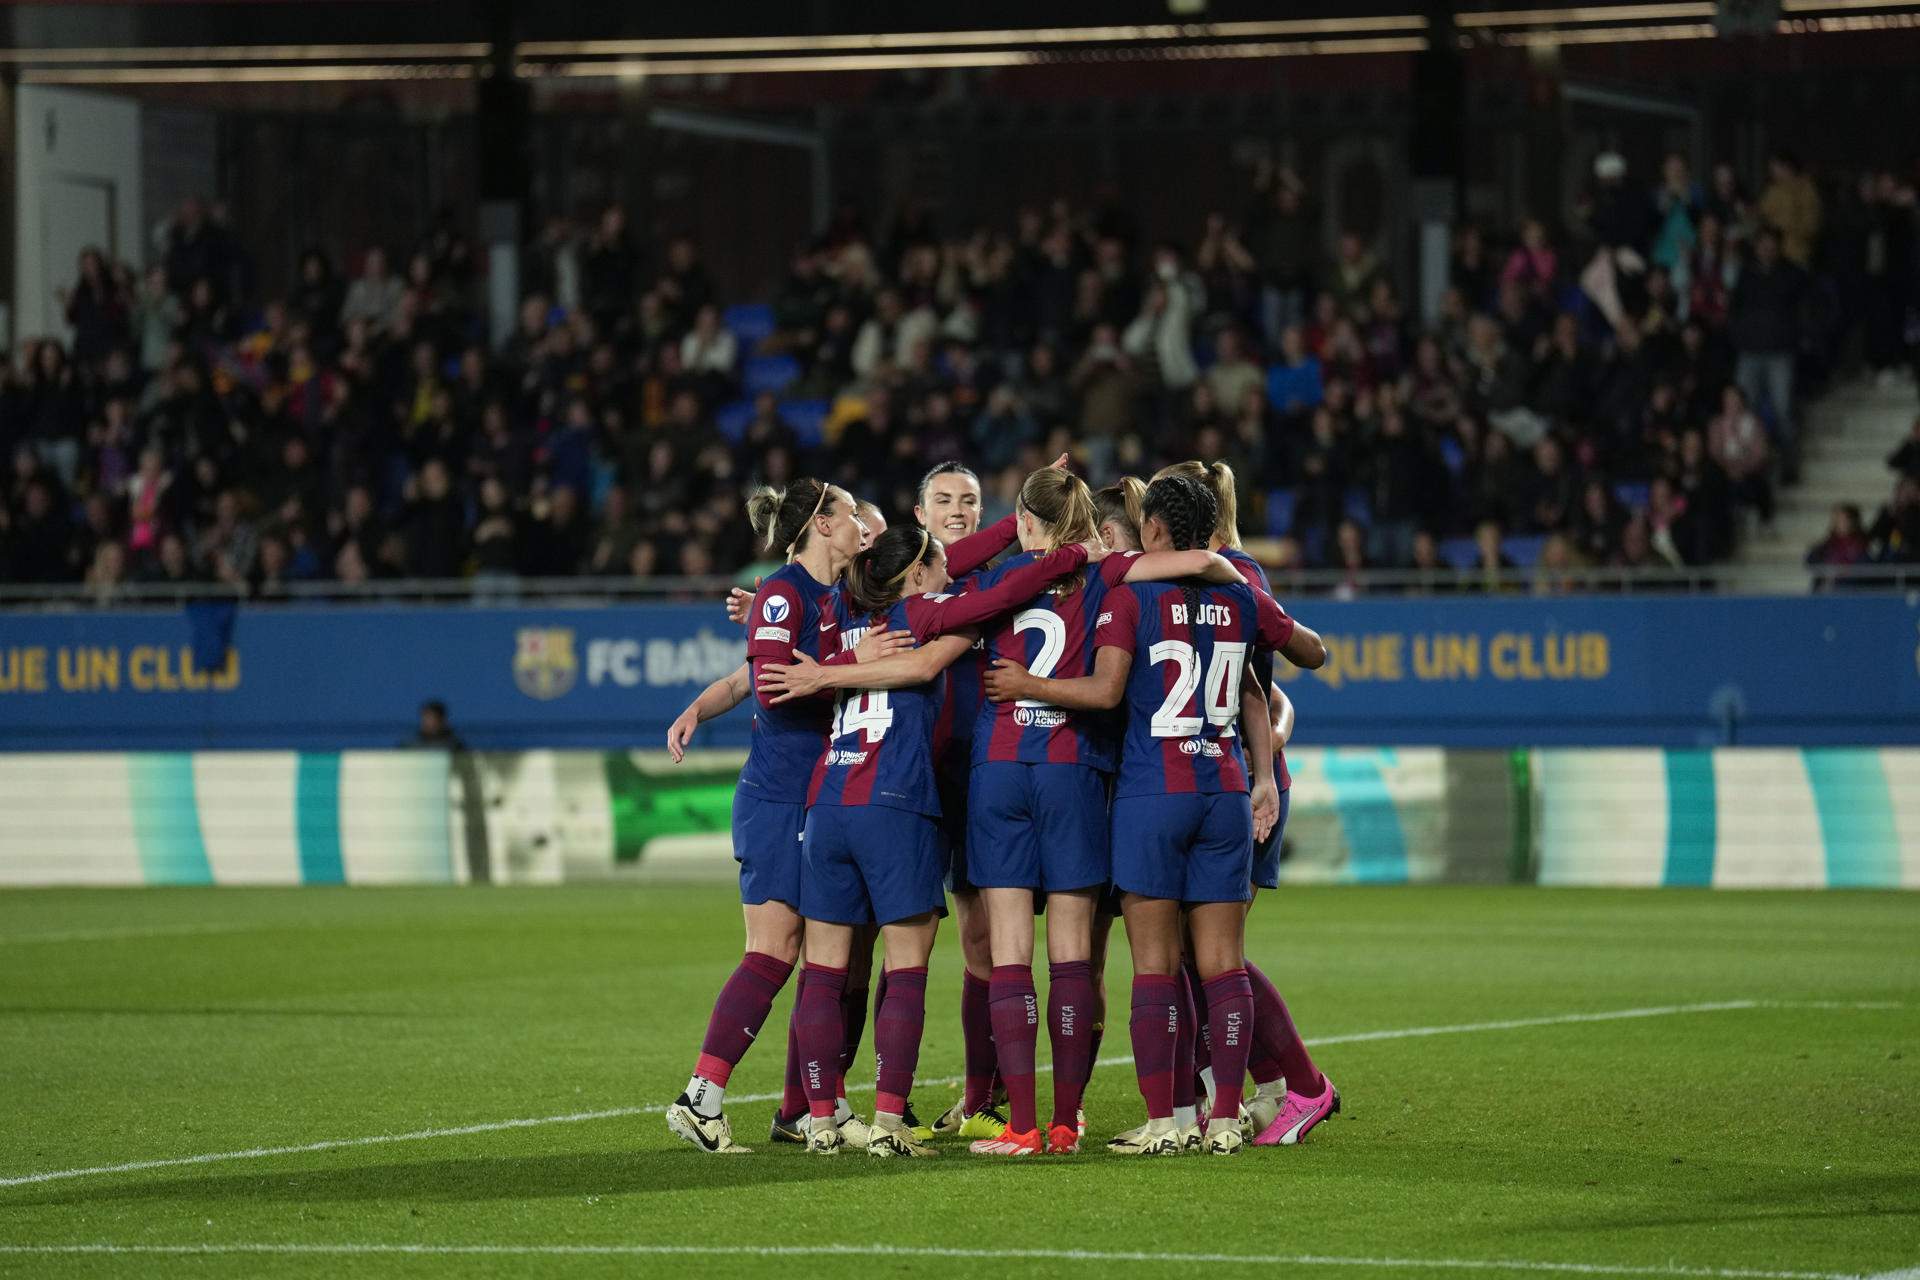 El Barça femení suma la seva novena Lliga i apunta al pòquer de títols